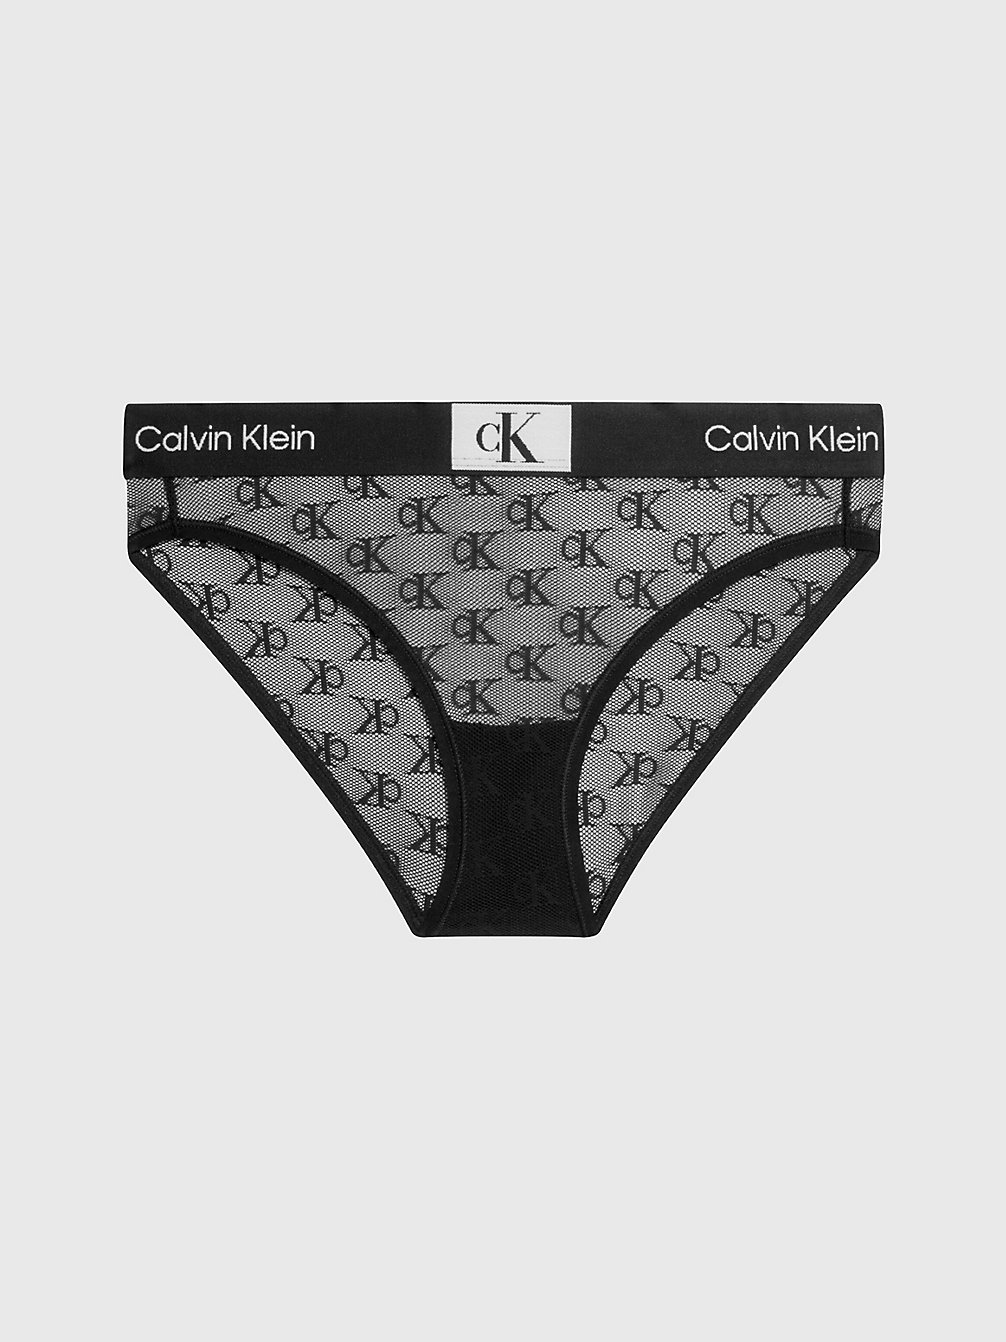 BLACK Lace Bikini Briefs - Ck96 undefined women Calvin Klein